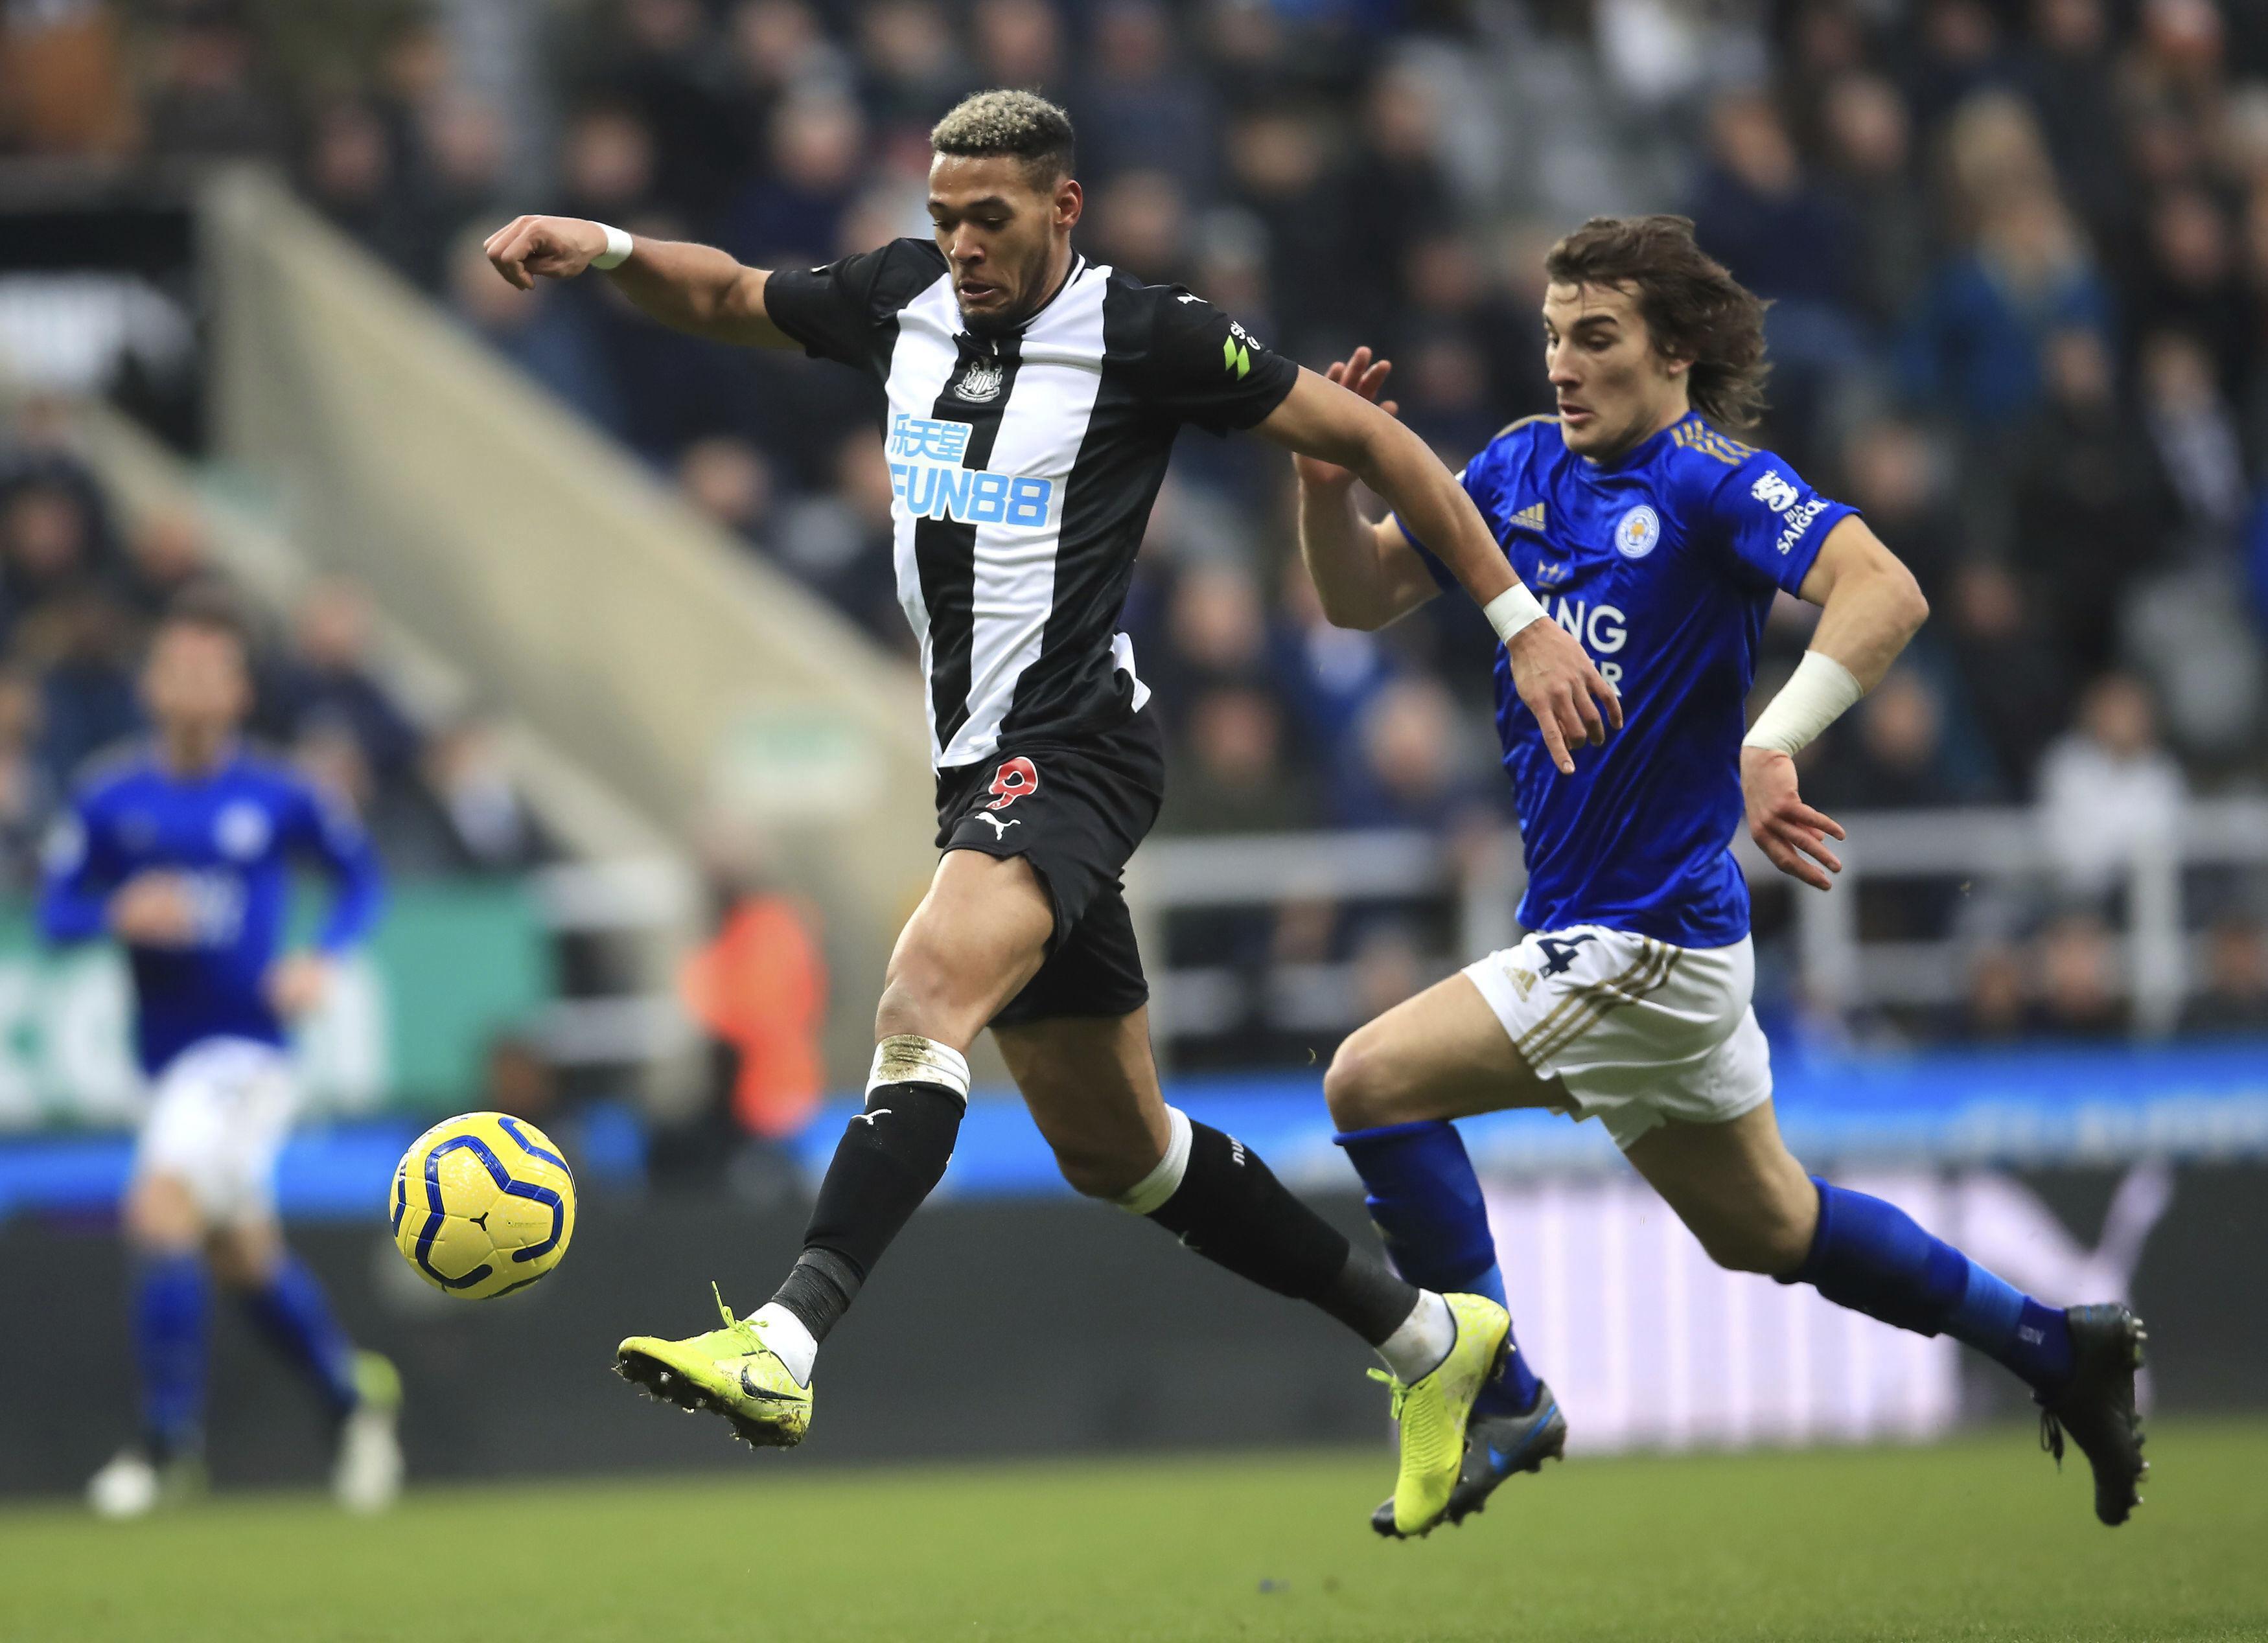 (ÖZET) Newcastle United - Leicester City maç sonucu: 0-3